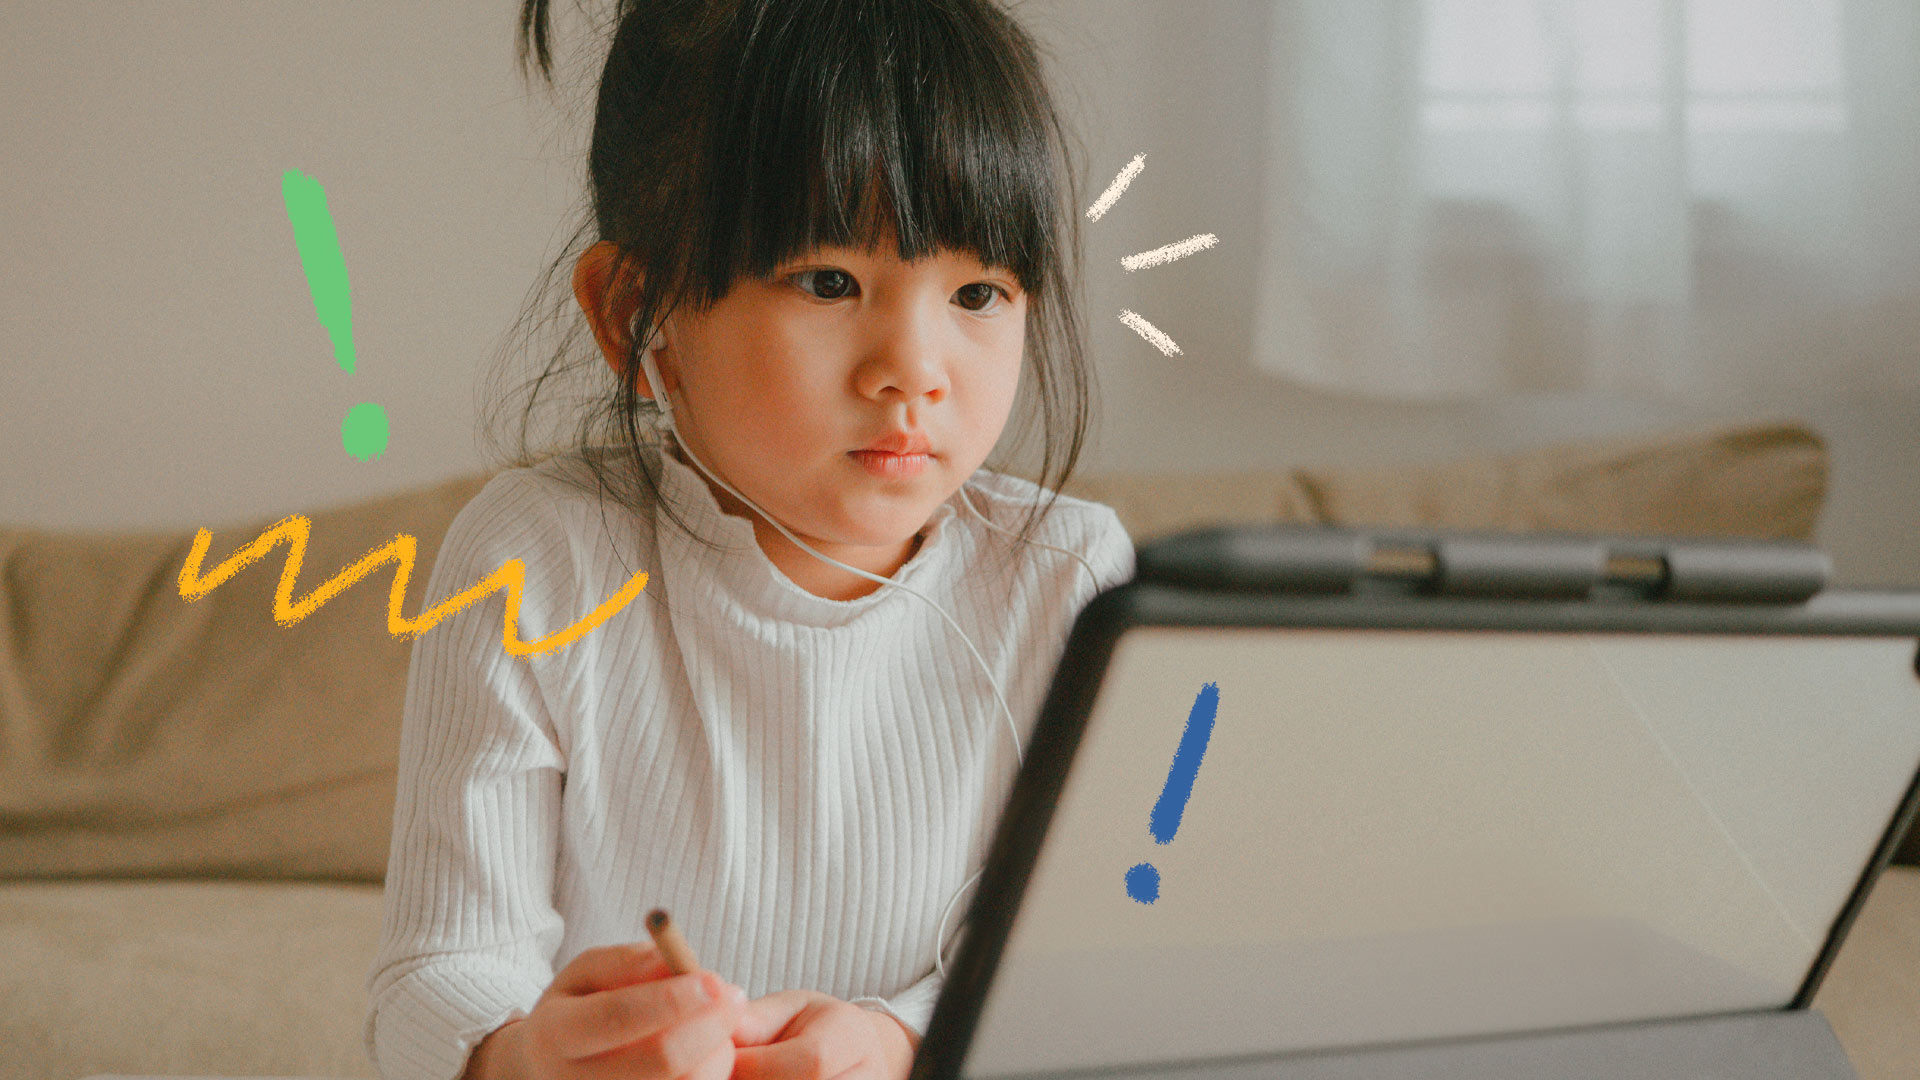 Cidadania digital: uma menina oriental está olhando para a tela de um computador enquanto segura também uma caneta prestes a colocar suas ideias em ação